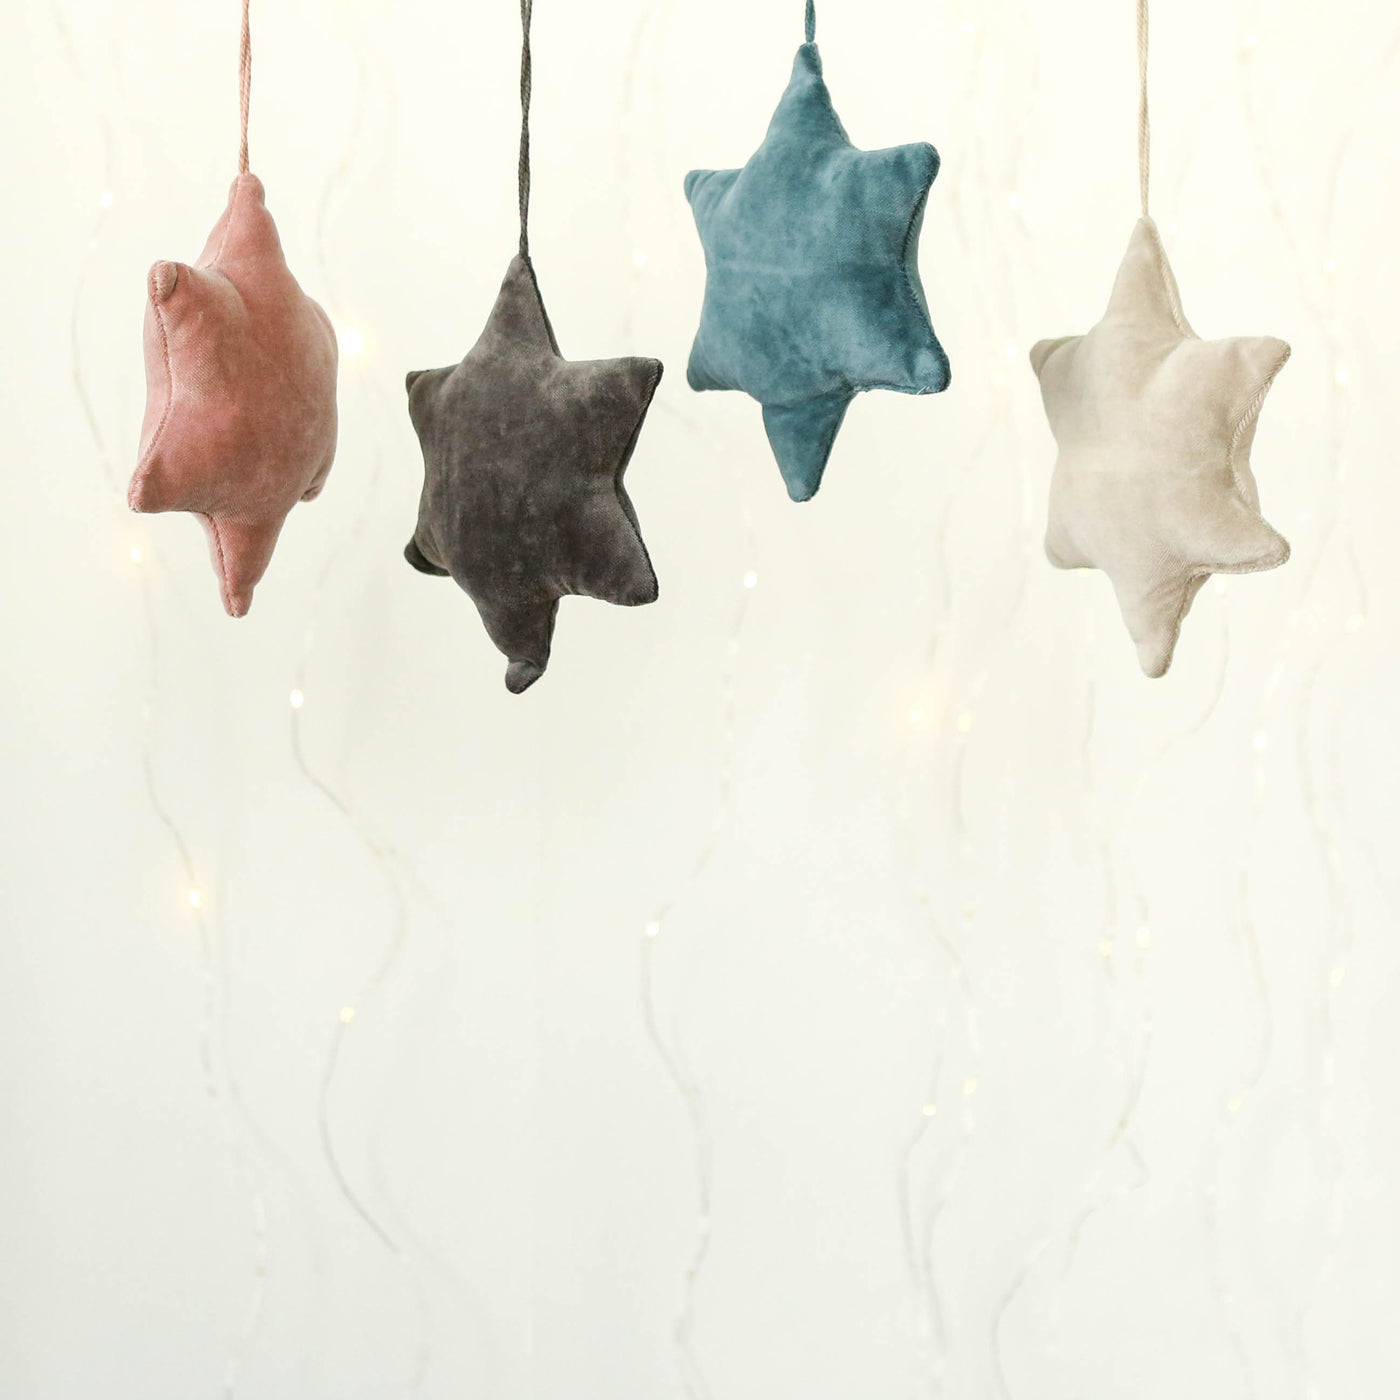 Velvet Hanging Star Ornament - Dark Grey